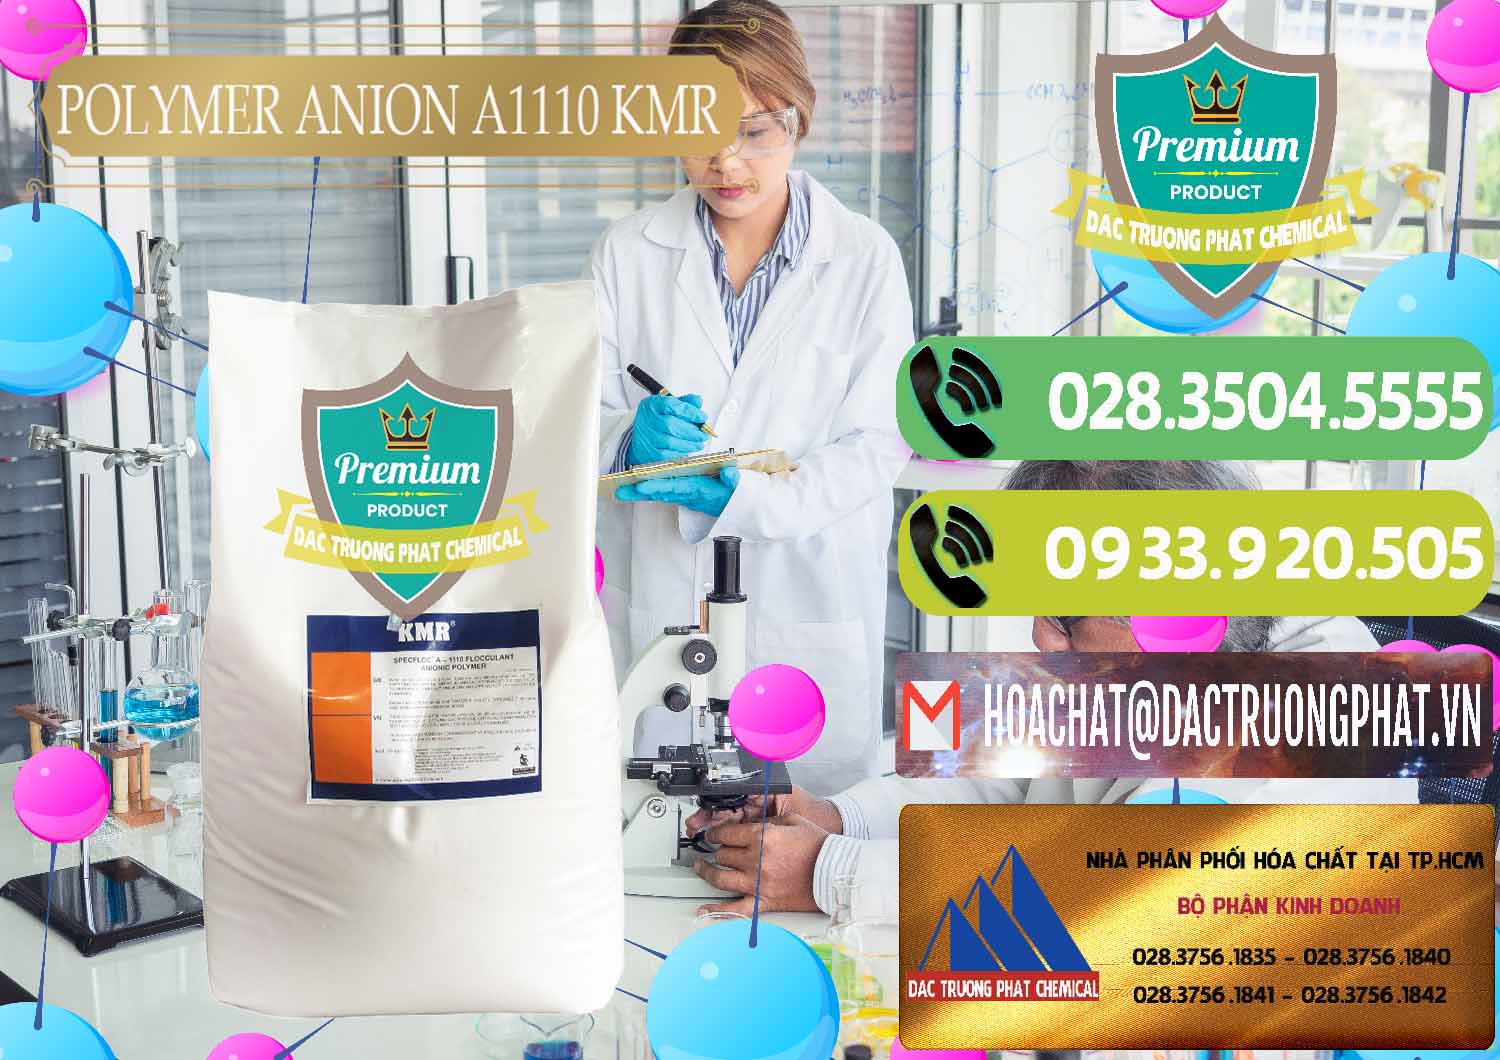 Công ty bán & phân phối Polymer Anion A1110 - KMR Anh Quốc England - 0118 - Công ty chuyên kinh doanh - phân phối hóa chất tại TP.HCM - hoachatmientay.vn